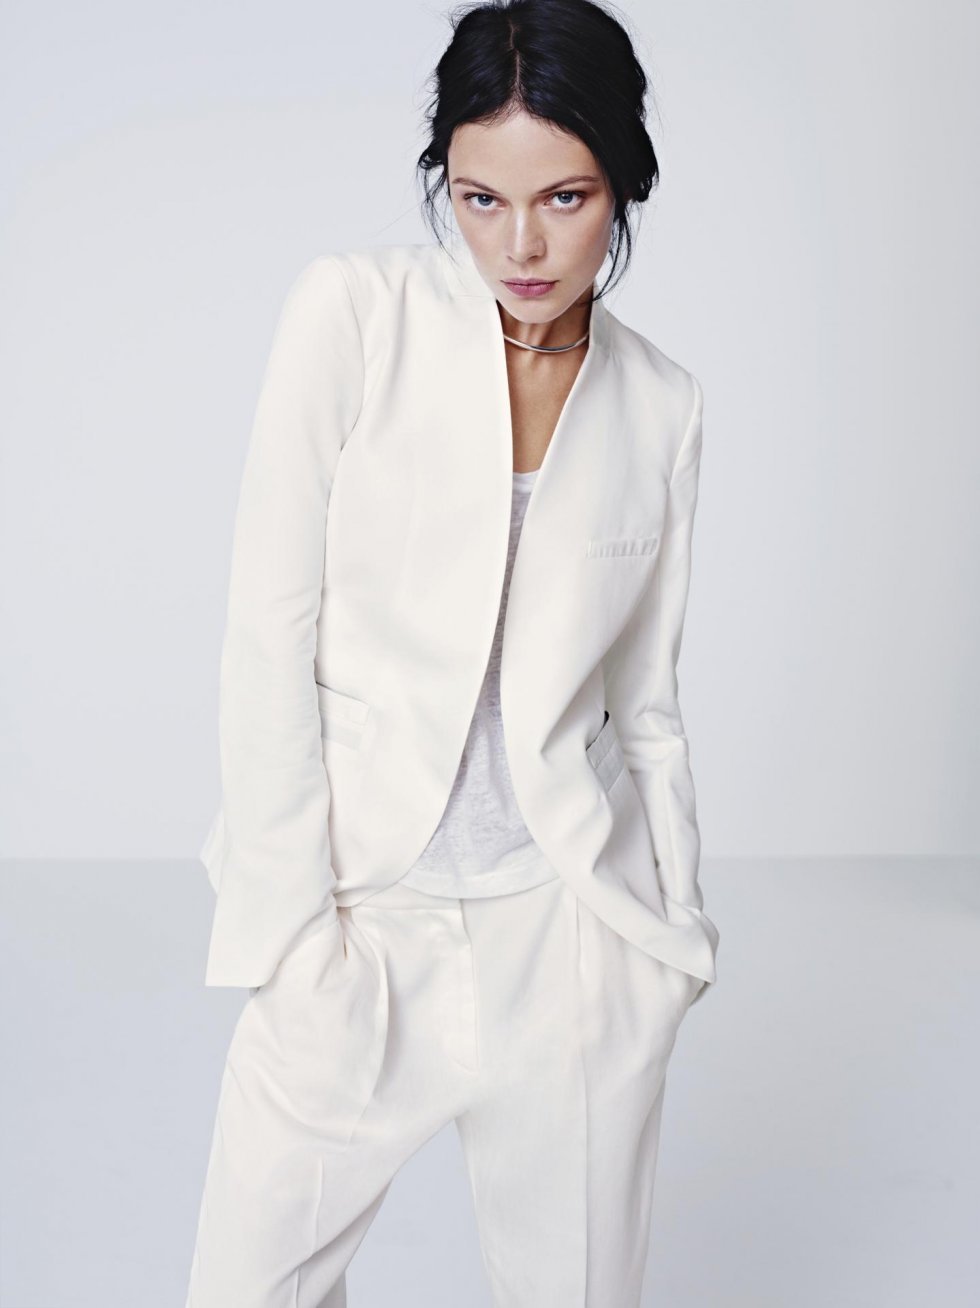 Gennemført hvidt på hvidt look med hvidt jakkesæt og hvid tanktop. Pressebillede fra H&M - Fotograf Kacper Kasprzyk - Traditionel forårstendens: Farven hvid!